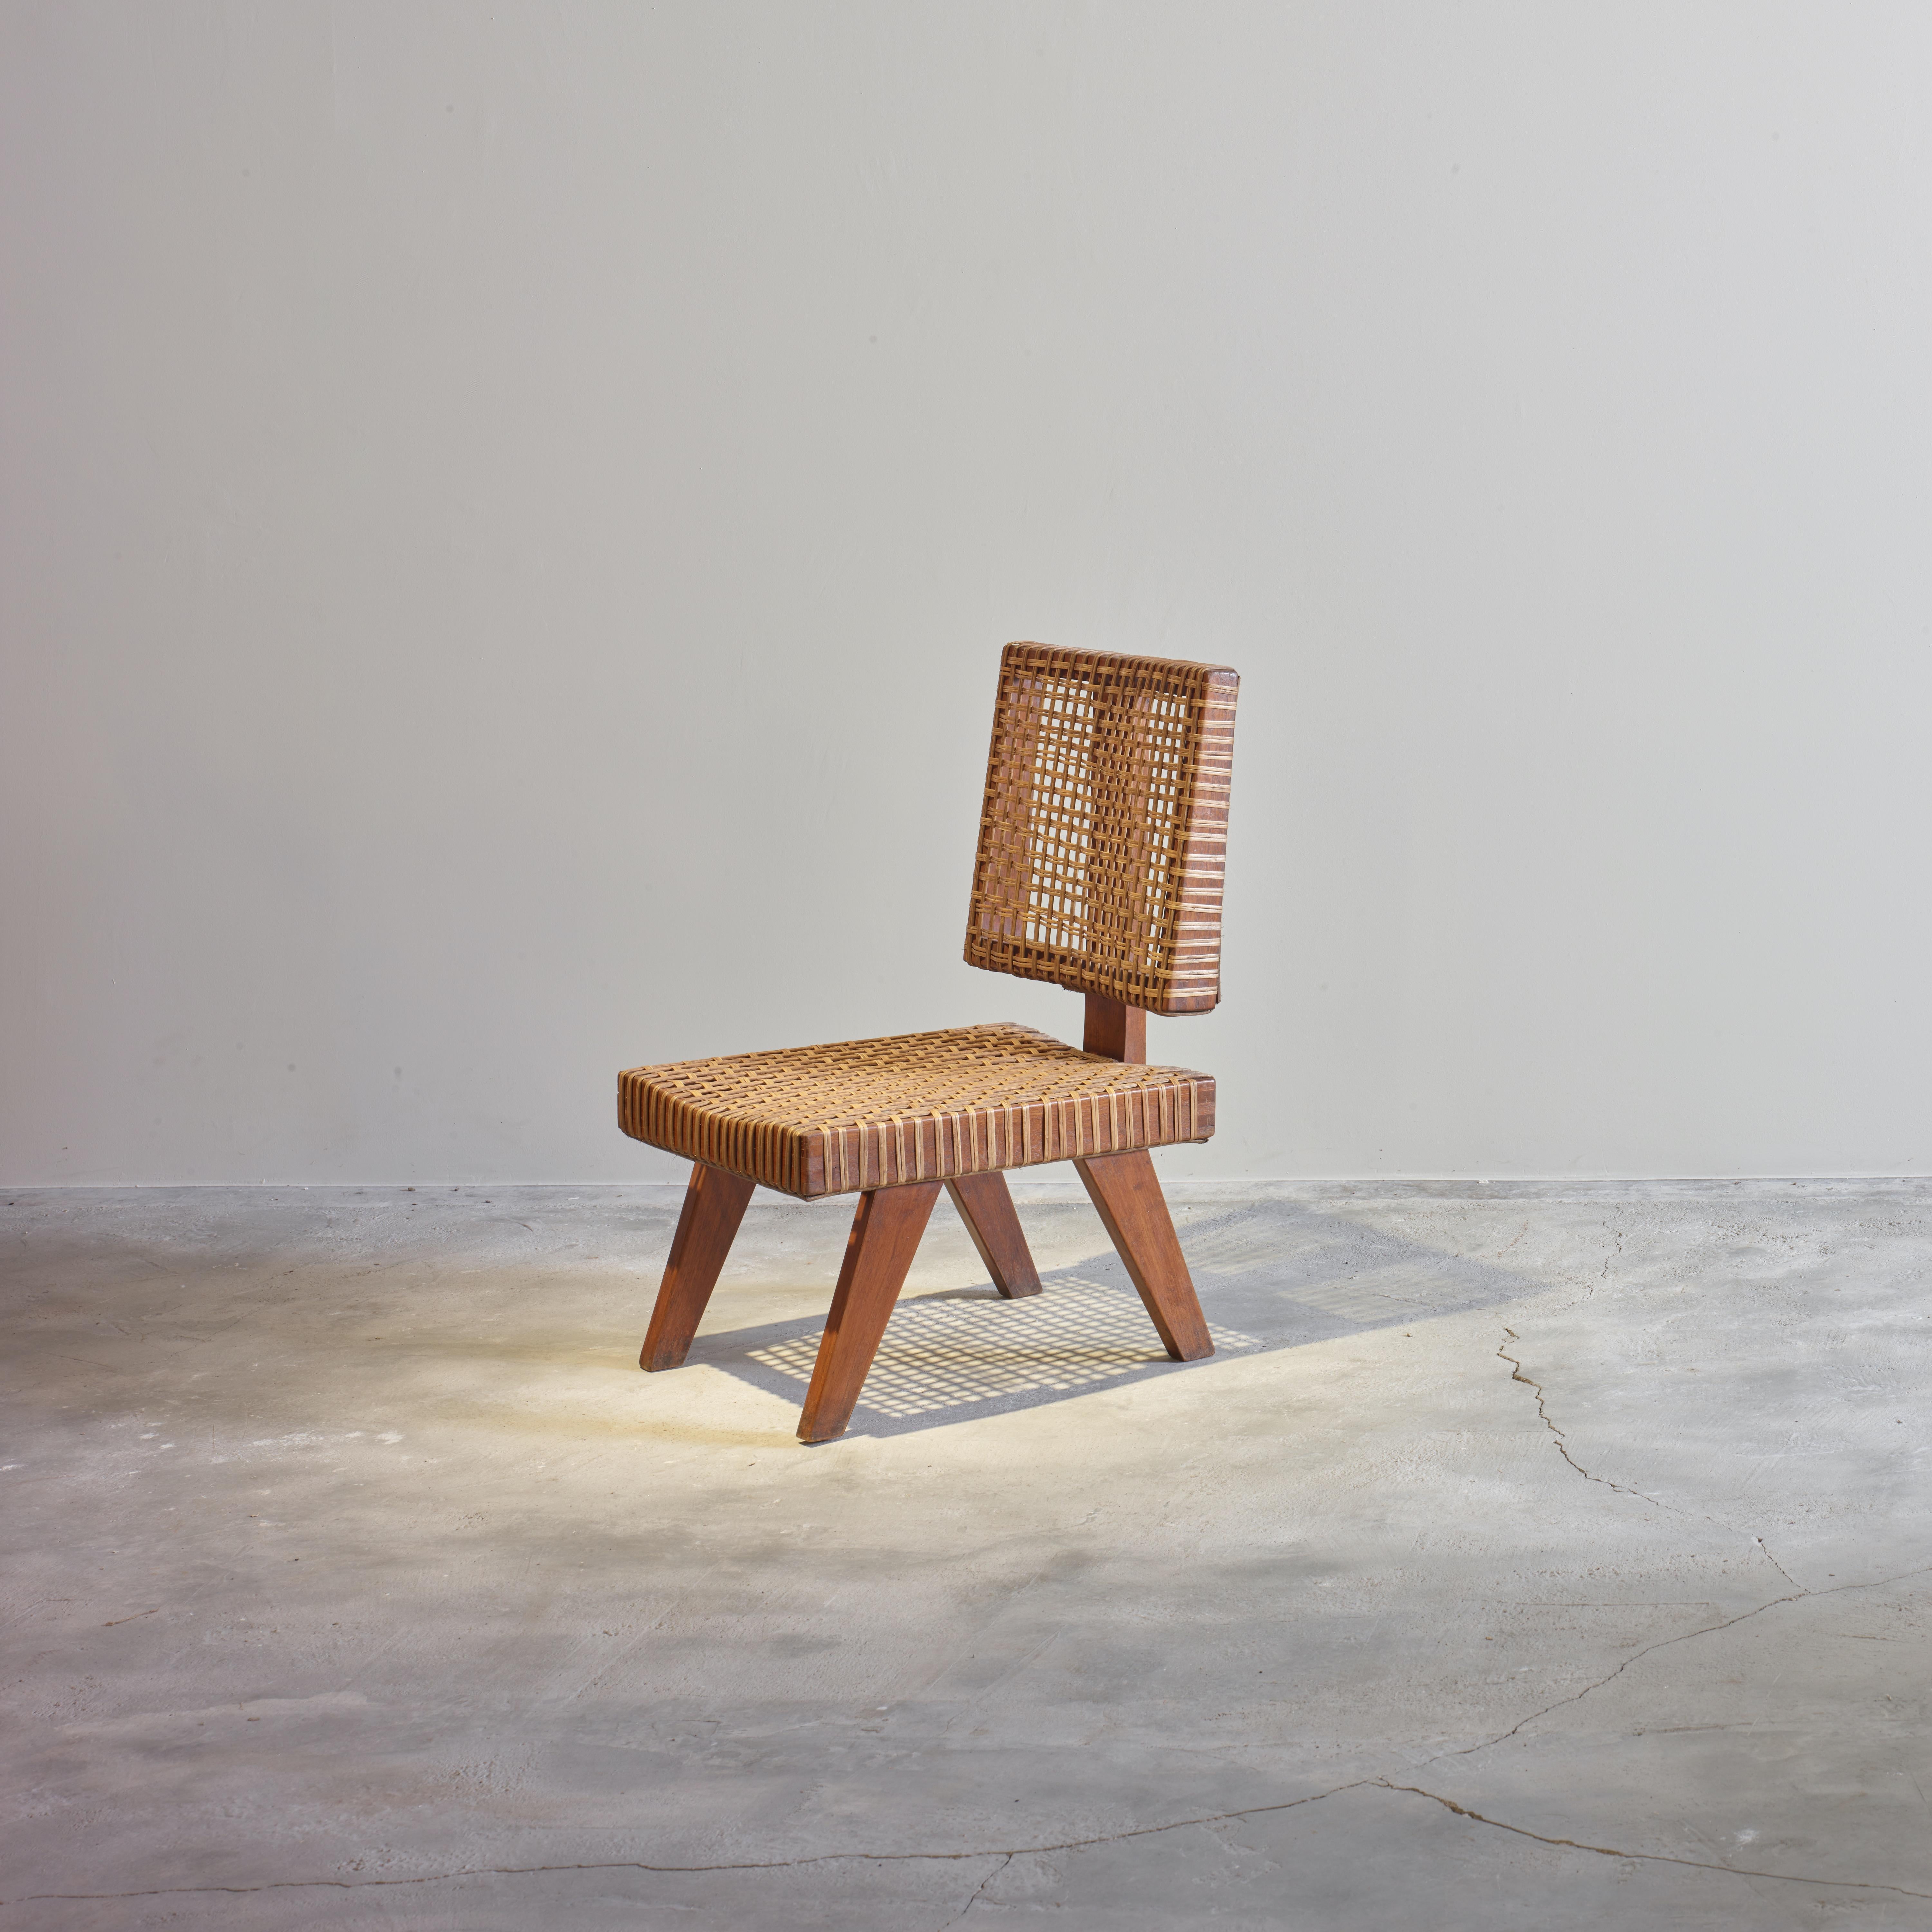 Dieser Stuhl ist ein sehr seltenes und ikonisches Designstück. Es sind nur sehr wenige Exemplare dieses Stuhldesigns bekannt. Das Design/One ist roh in seiner Einfachheit, es zeigt ein leicht patiniertes MATERIAL. Es ist ziemlich rau und hat eine